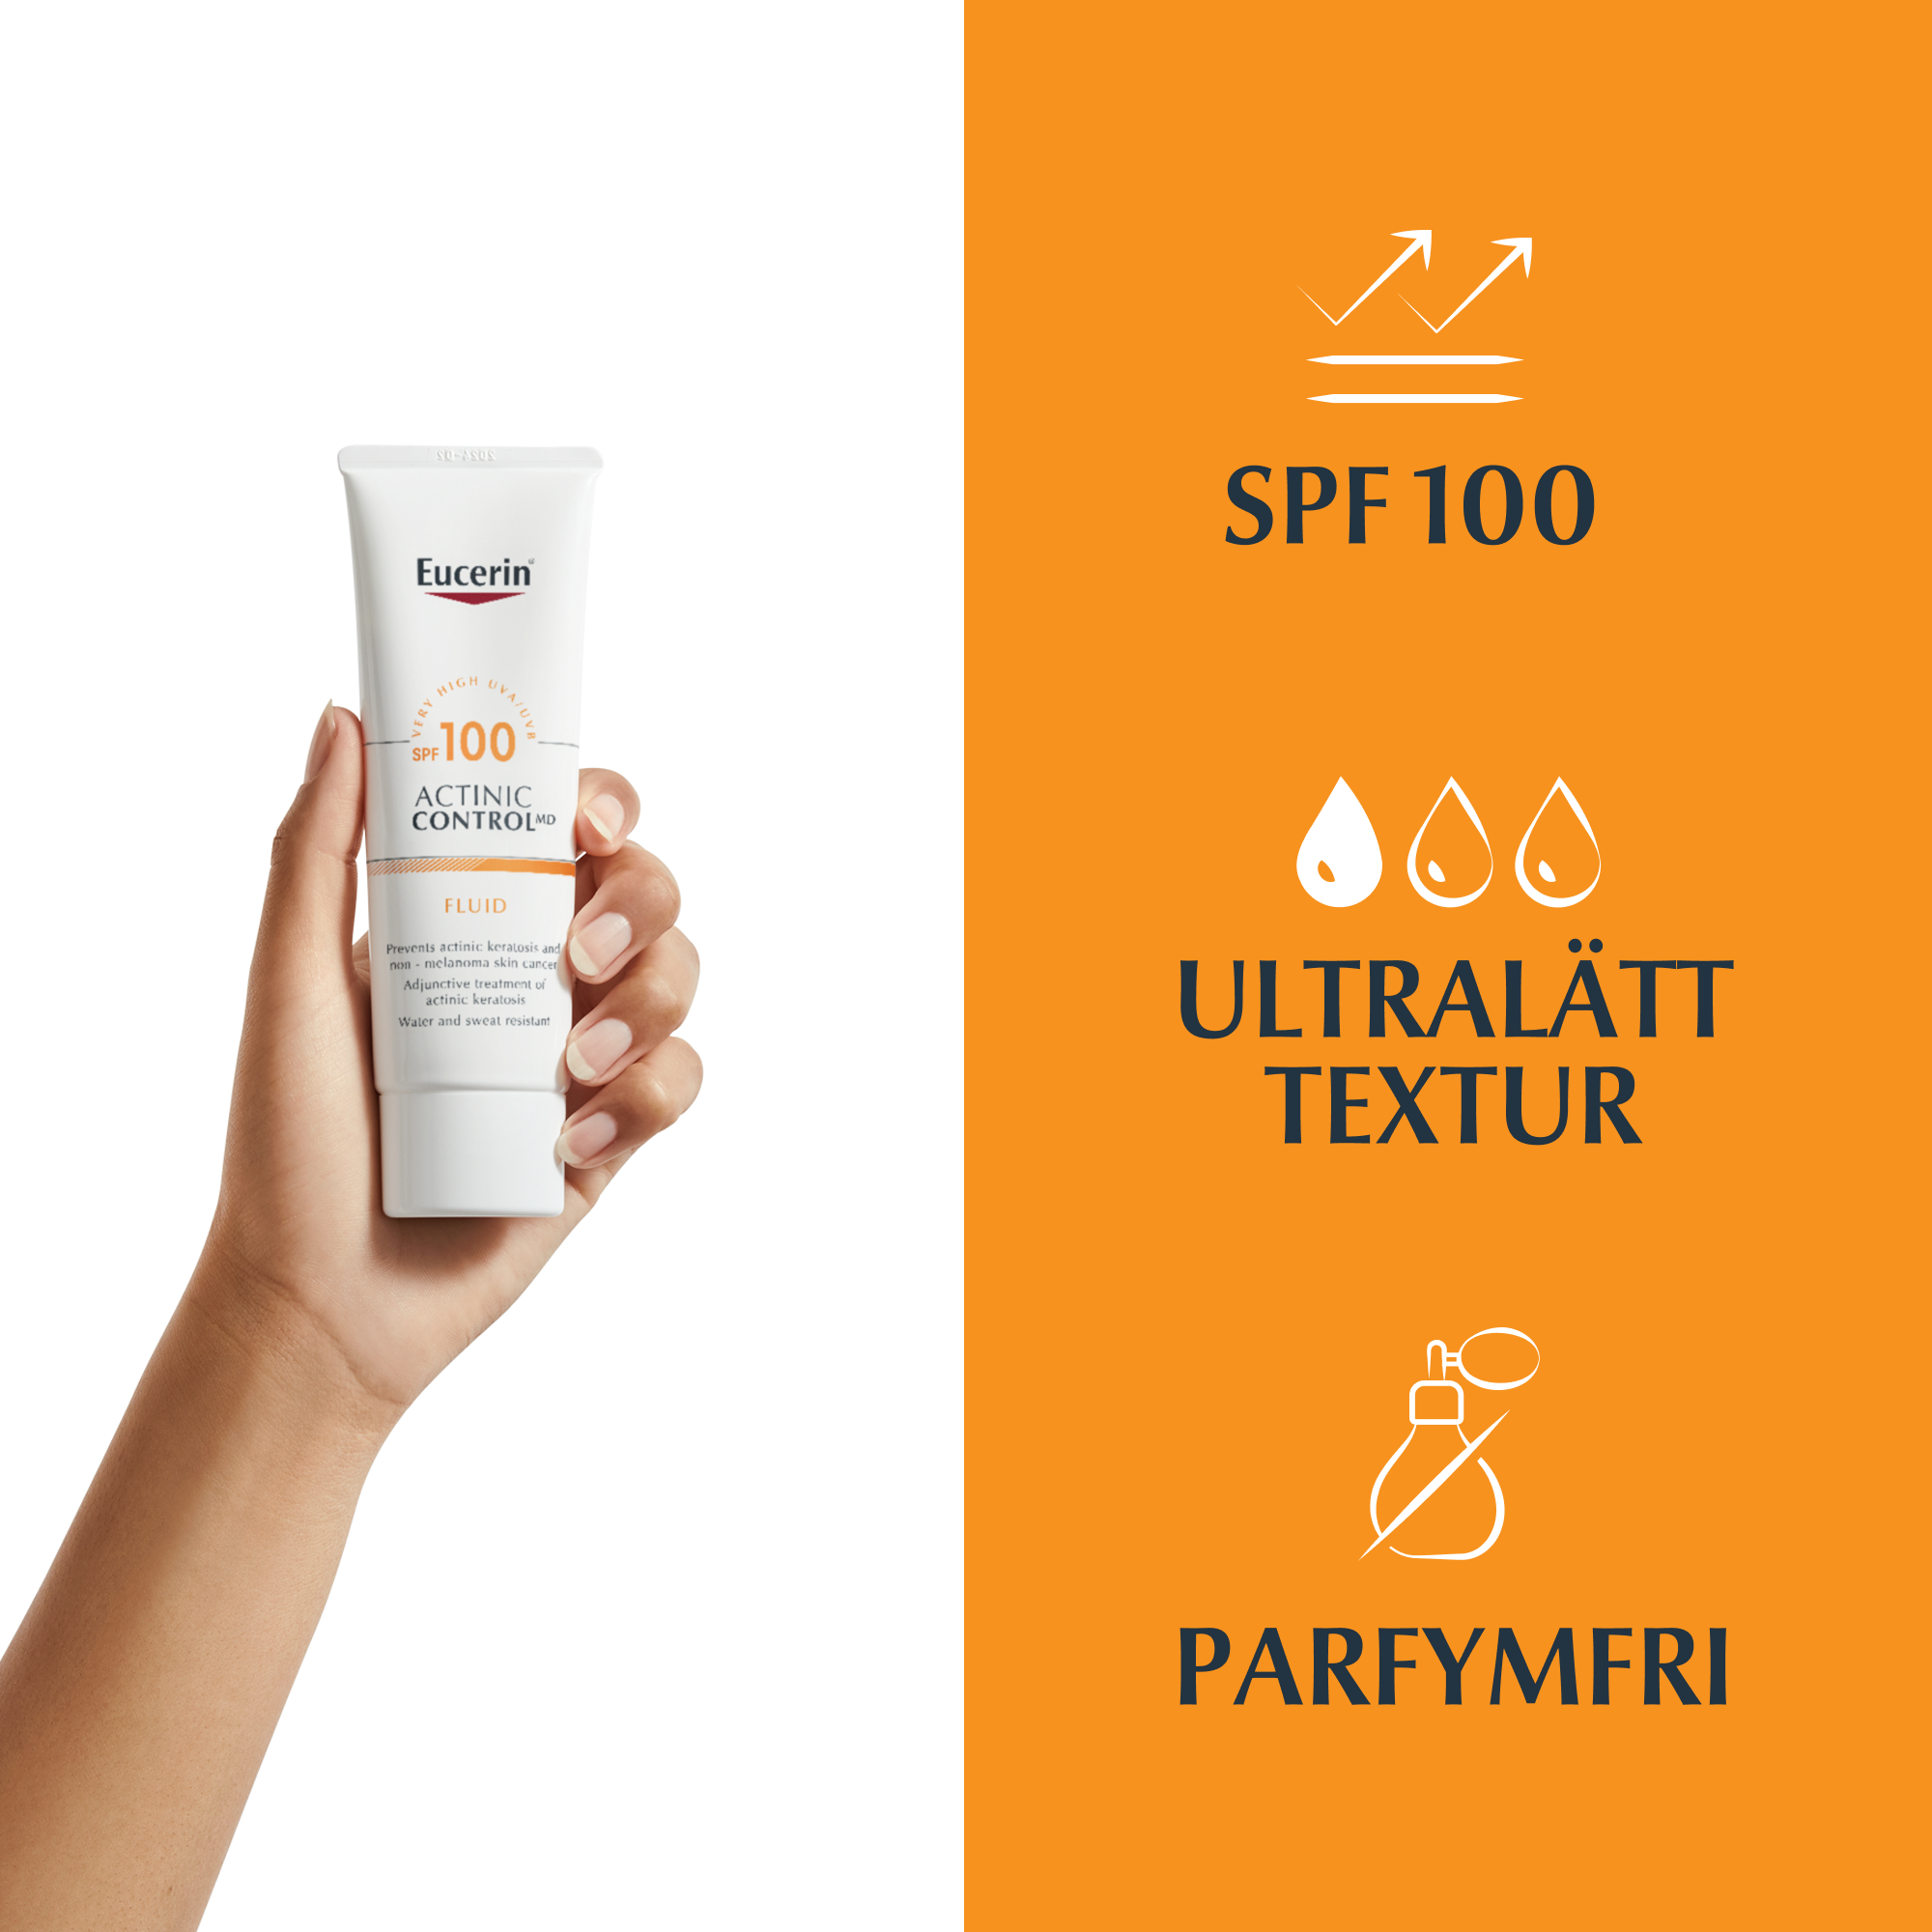 Bild på Eucerin Actinic Control SPF 100 som hålls i en hand och egenskaper för produkten: SPF 100, Ultralätt textur, parfymfri